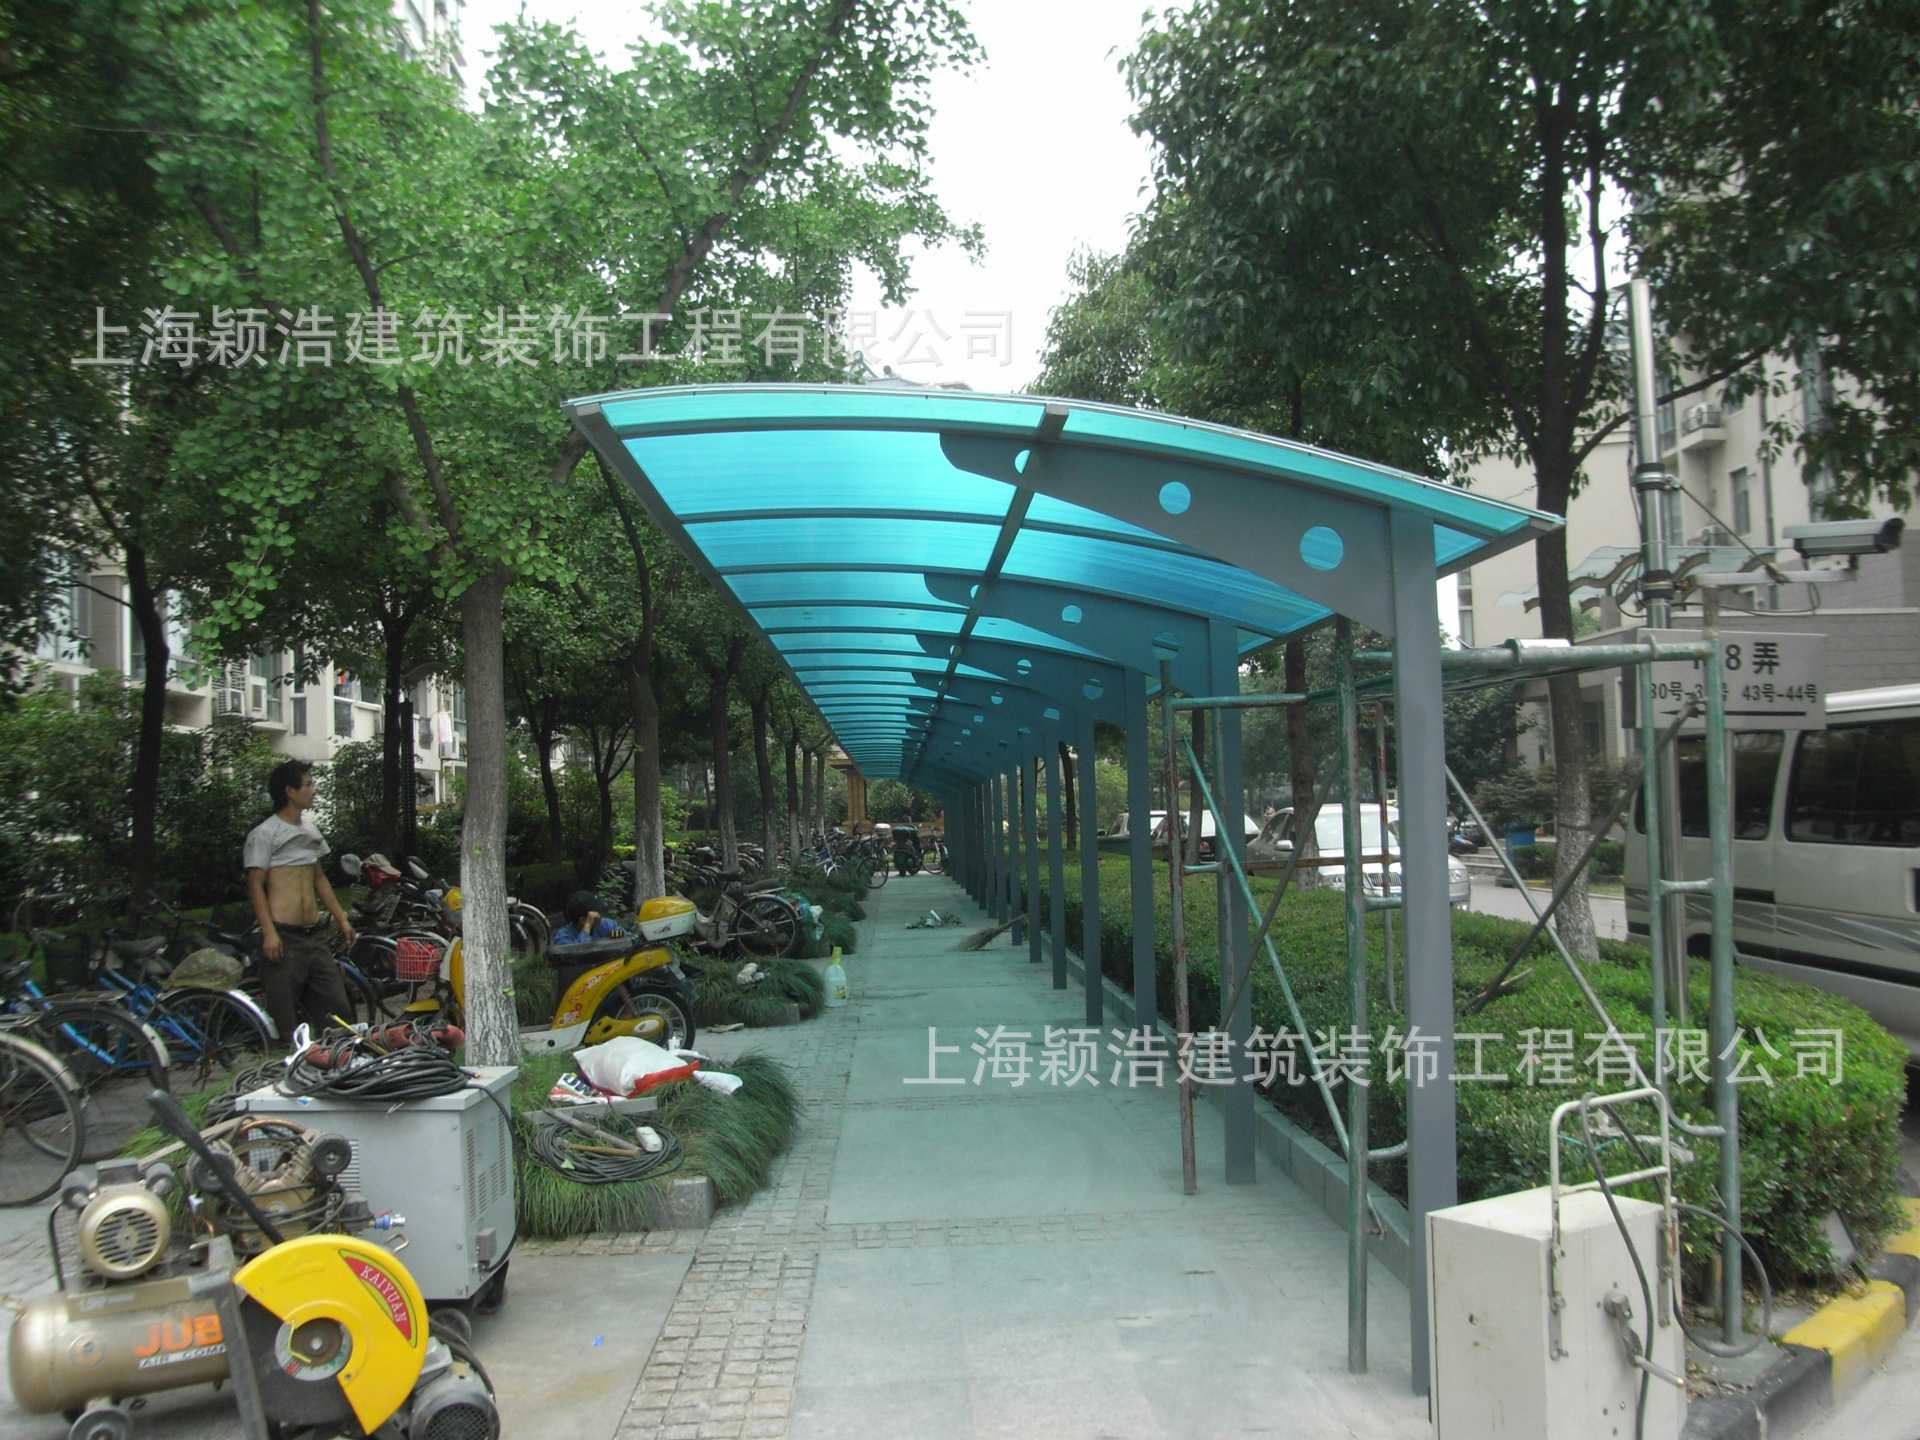 【热销自行车棚】上海嘉定钢结构阳光板自行车棚厂家